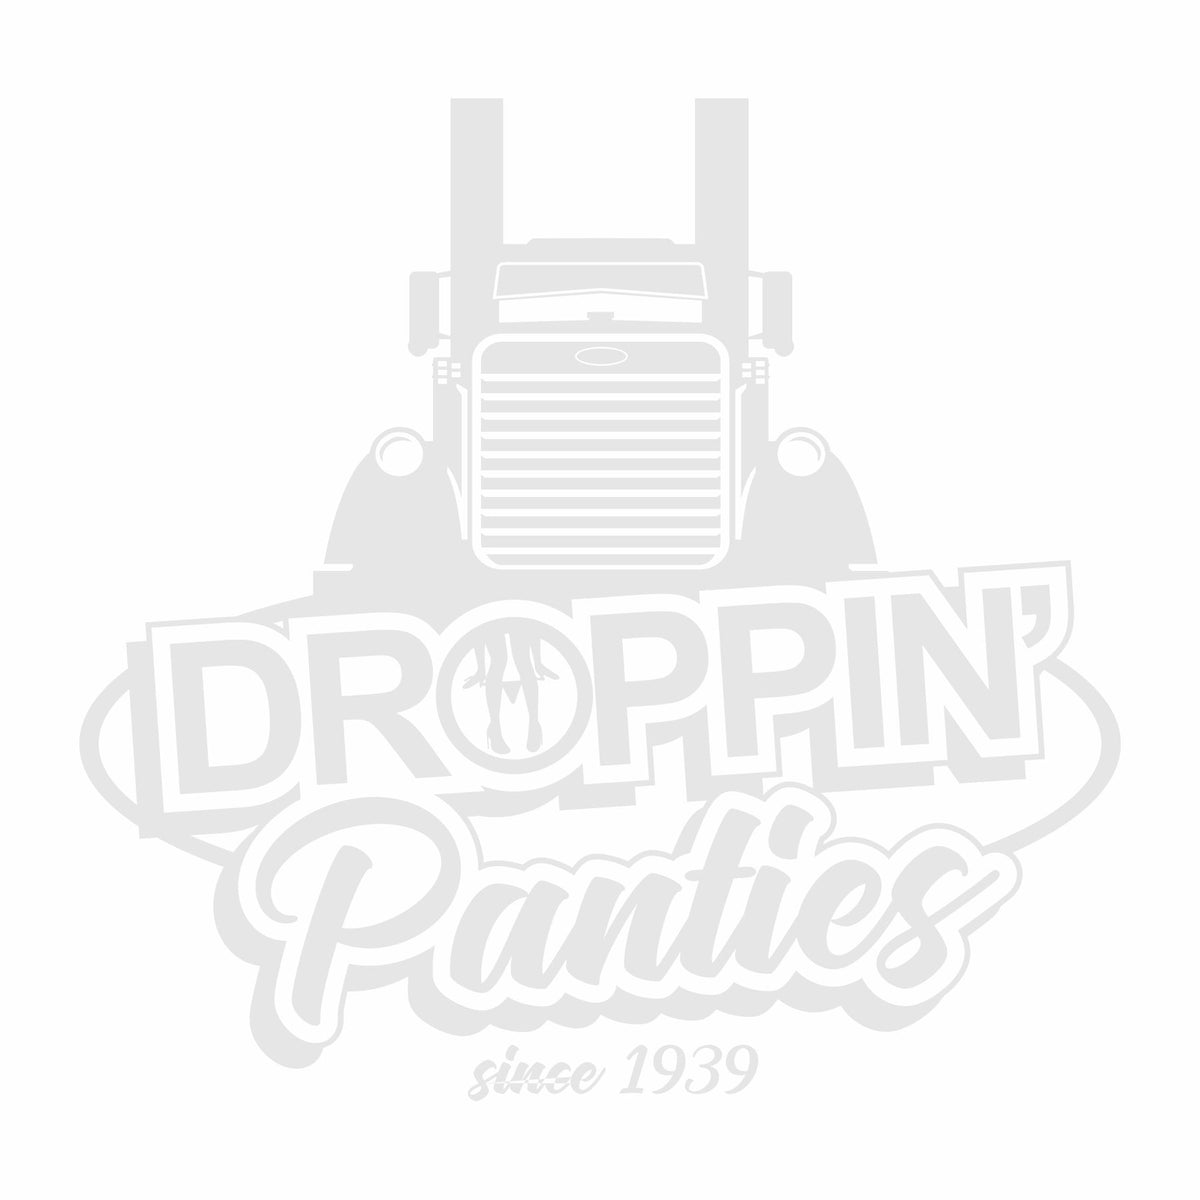 Droppin' Panties since 1939 - Peterbilt Vinyl Decal - Free Shipping